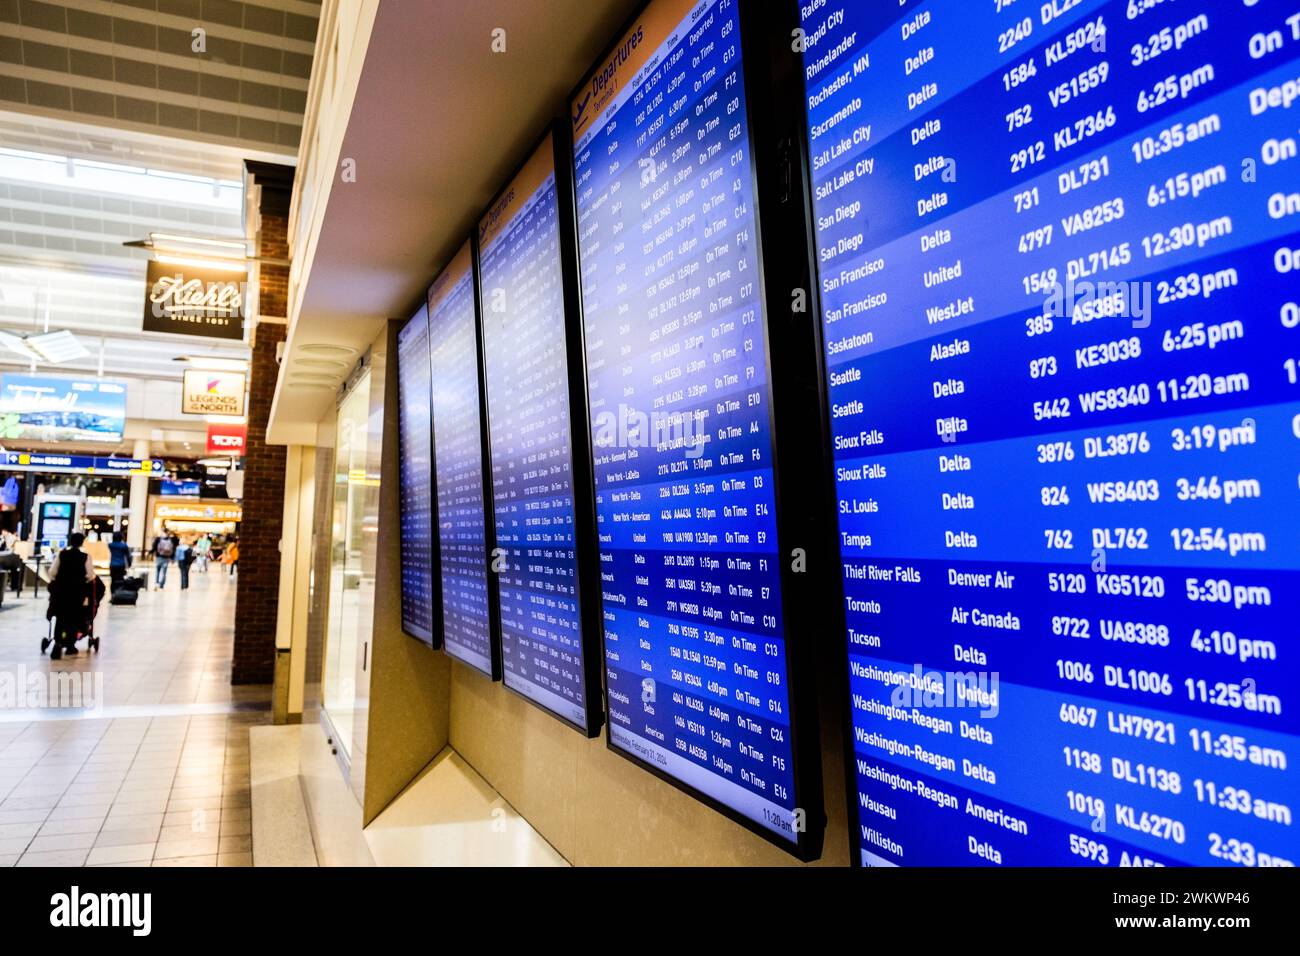 Les voyageurs aériens et l'affichage arrivée-départ au Minneapolis-équipé Paul Airport, États-Unis (MSP) lors d'une journée typique de voyage à l'aéroport. Banque D'Images